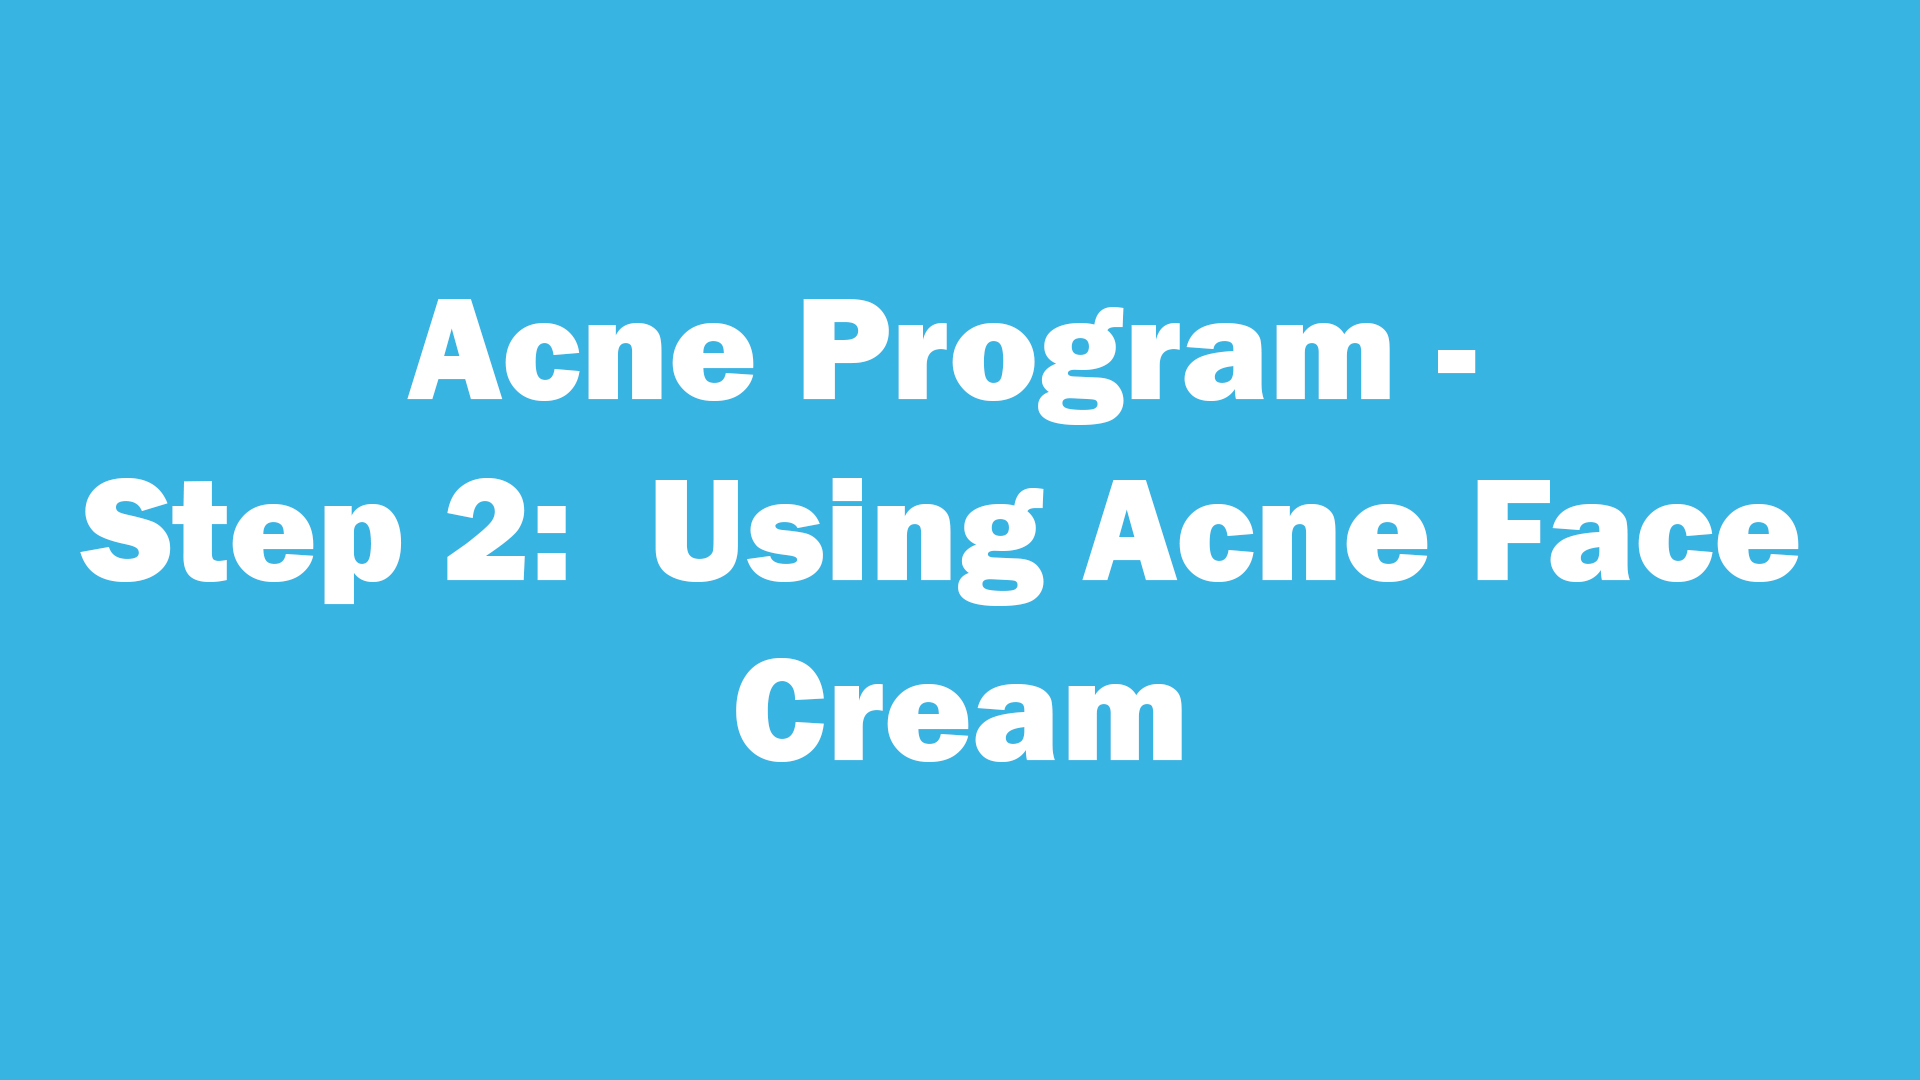 Acne Program - Step 2:  Using Acne Face Cream